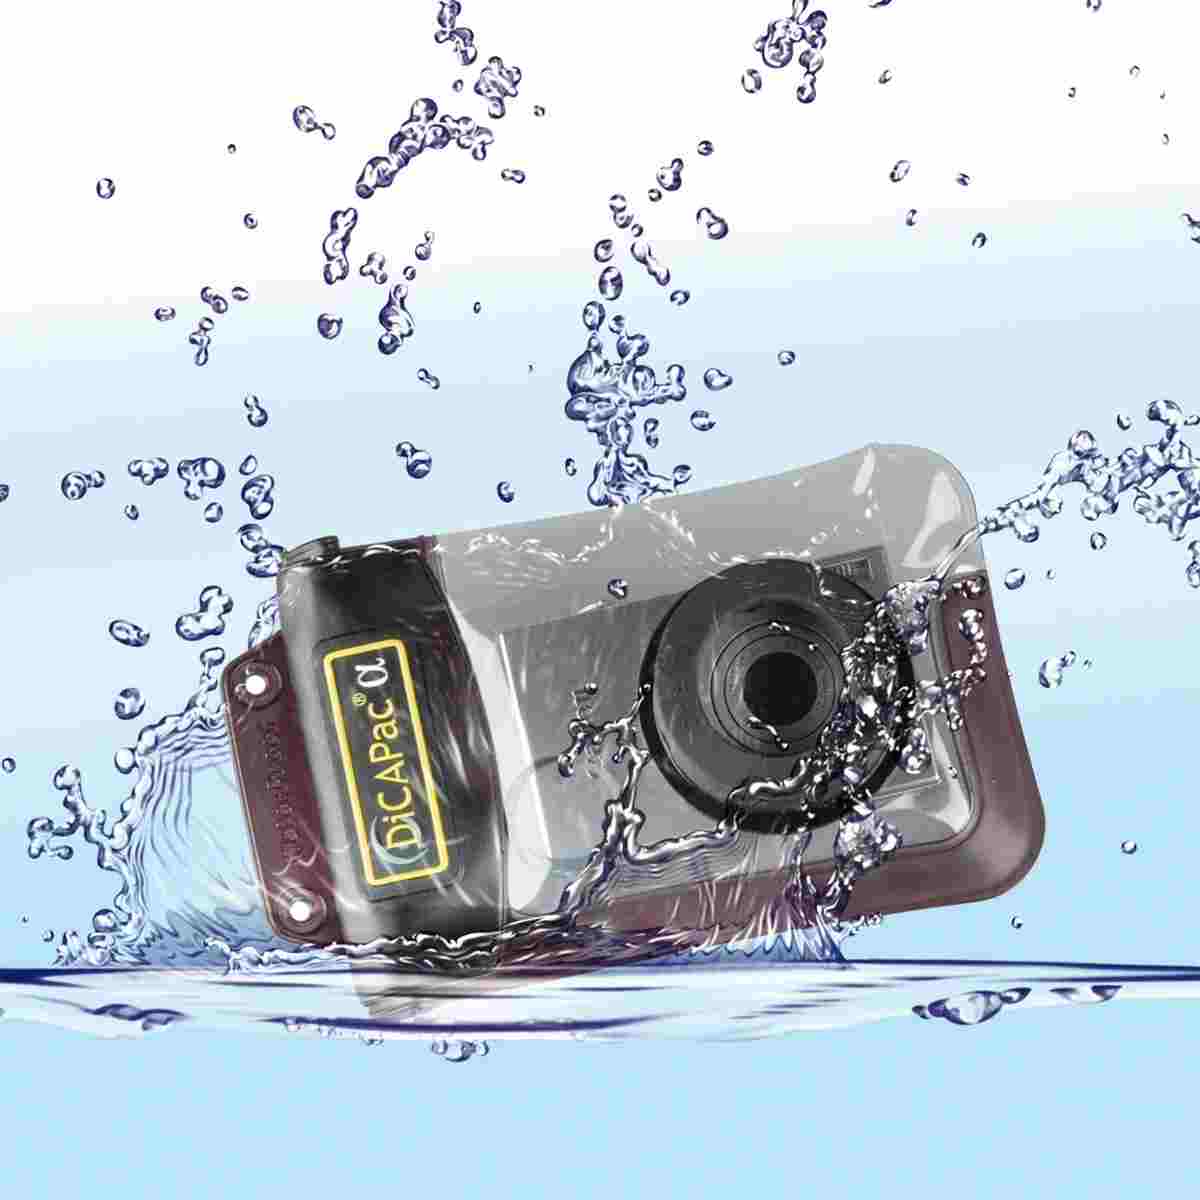 DiCAPac WP-310 Underwater Case